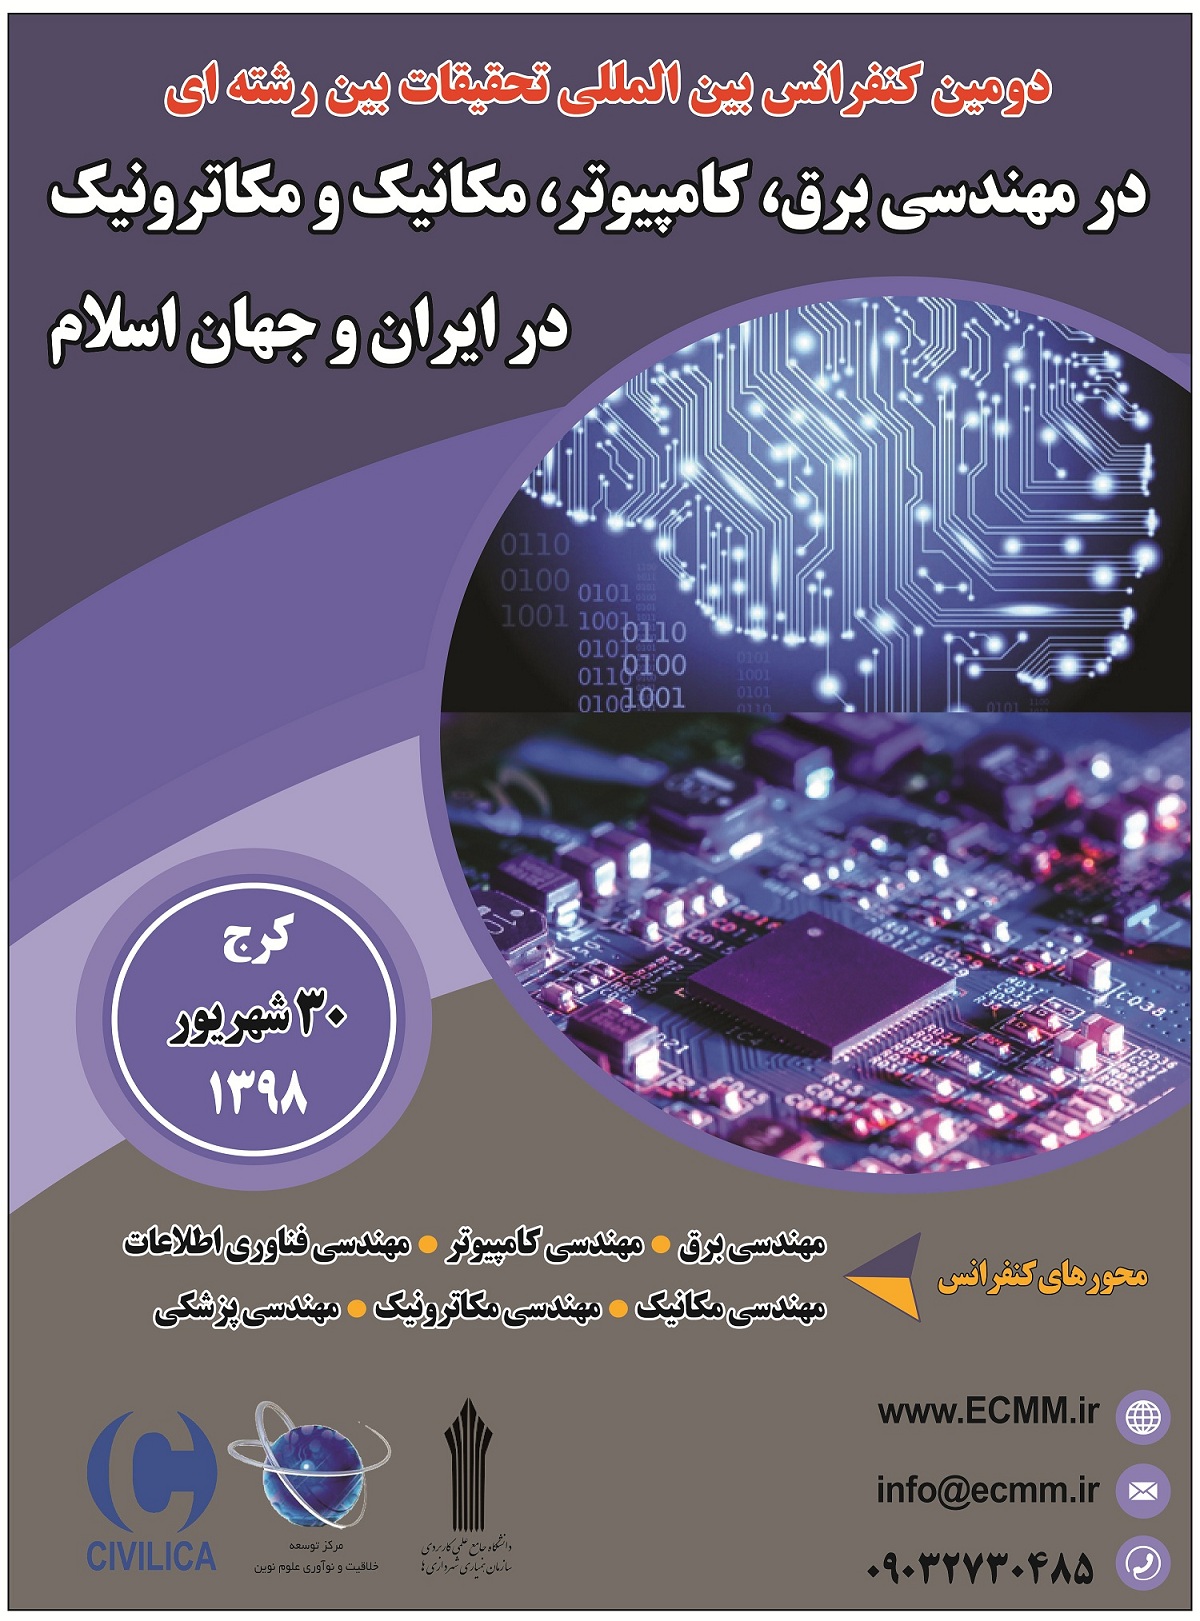 پوستر دومین کنفرانس بین المللی تحقیقات بین رشته ای در مهندسی برق، کامپیوتر، مکانیک و مکاترونیک در ایران و جهان اسلام